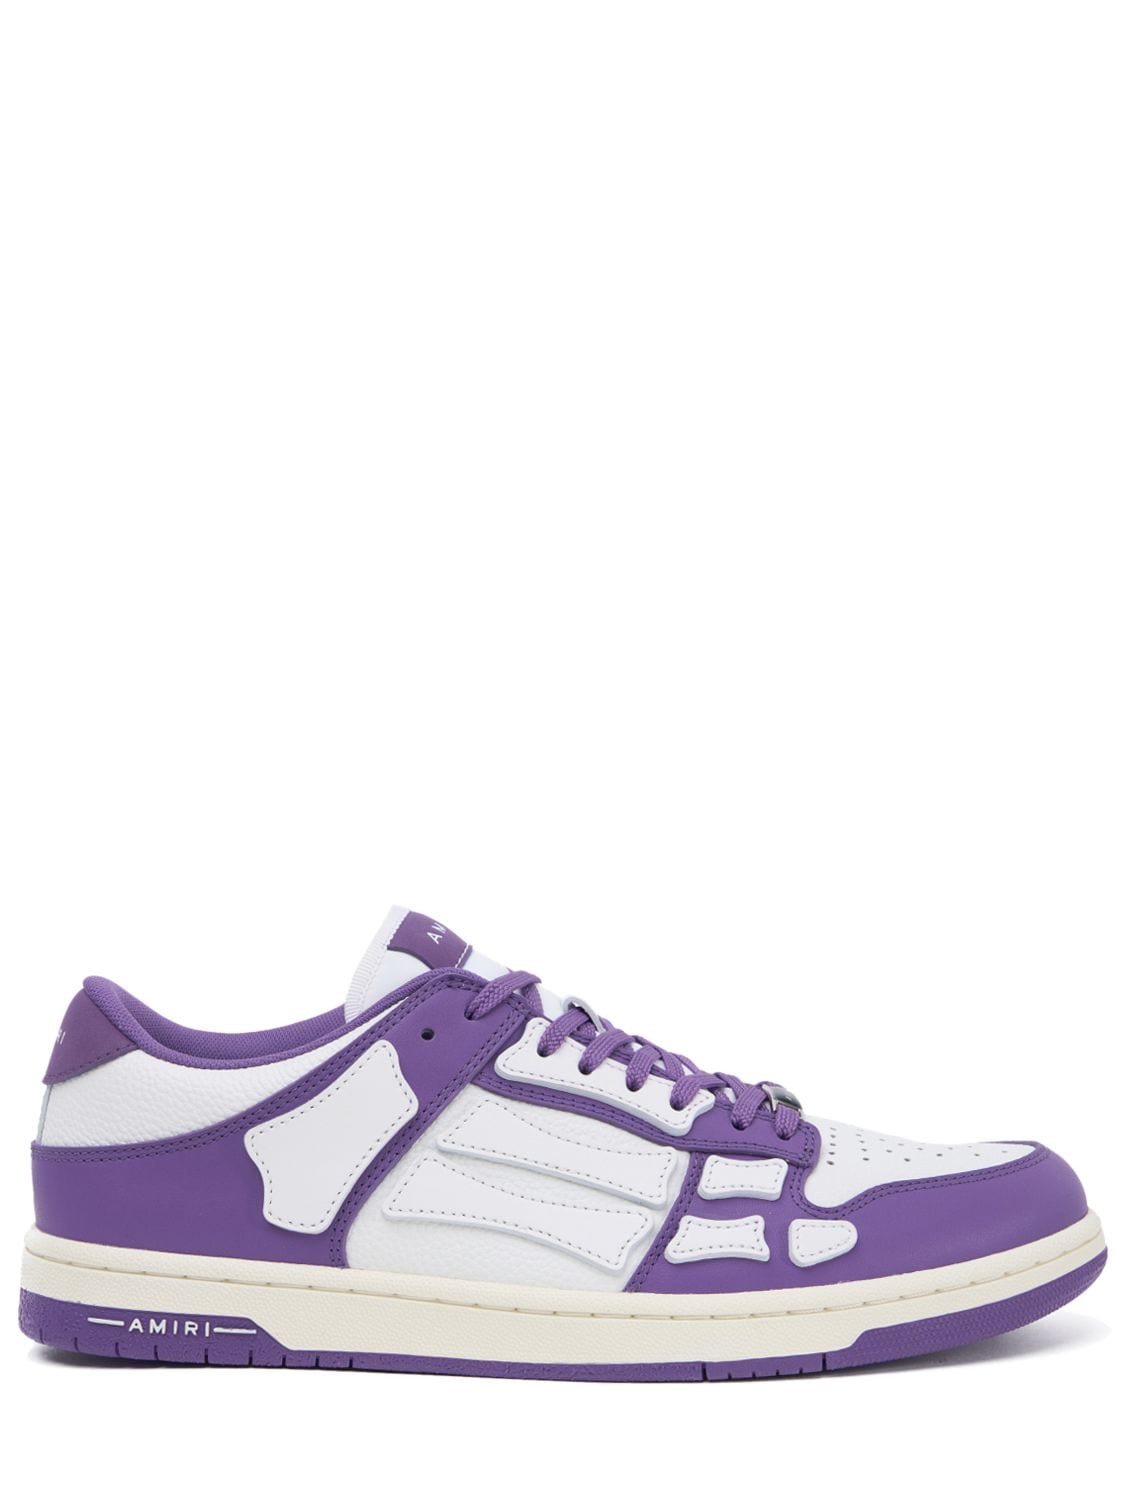 Amiri Skel Top Sneakers In Purple | ModeSens